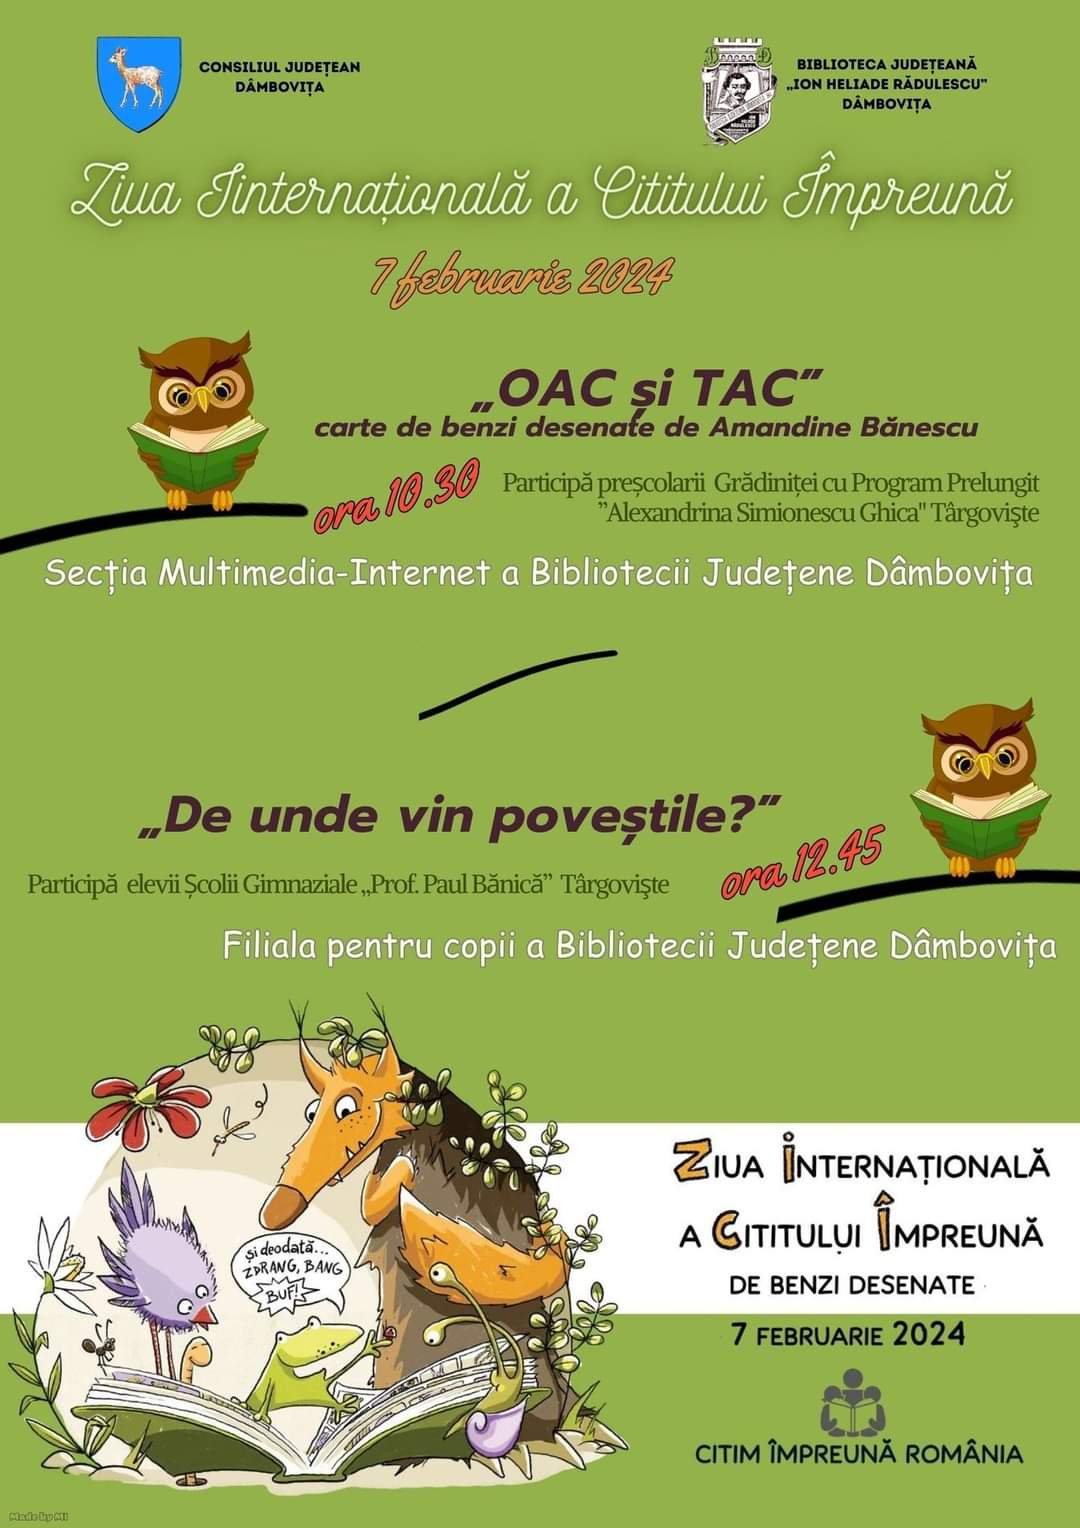 Biblioteca Județeană „I. H. Rădulescu” Dâmbovița se alătură evenimentului Ziua Internațională a Cititului Împreună, aflat la a opta ediție.